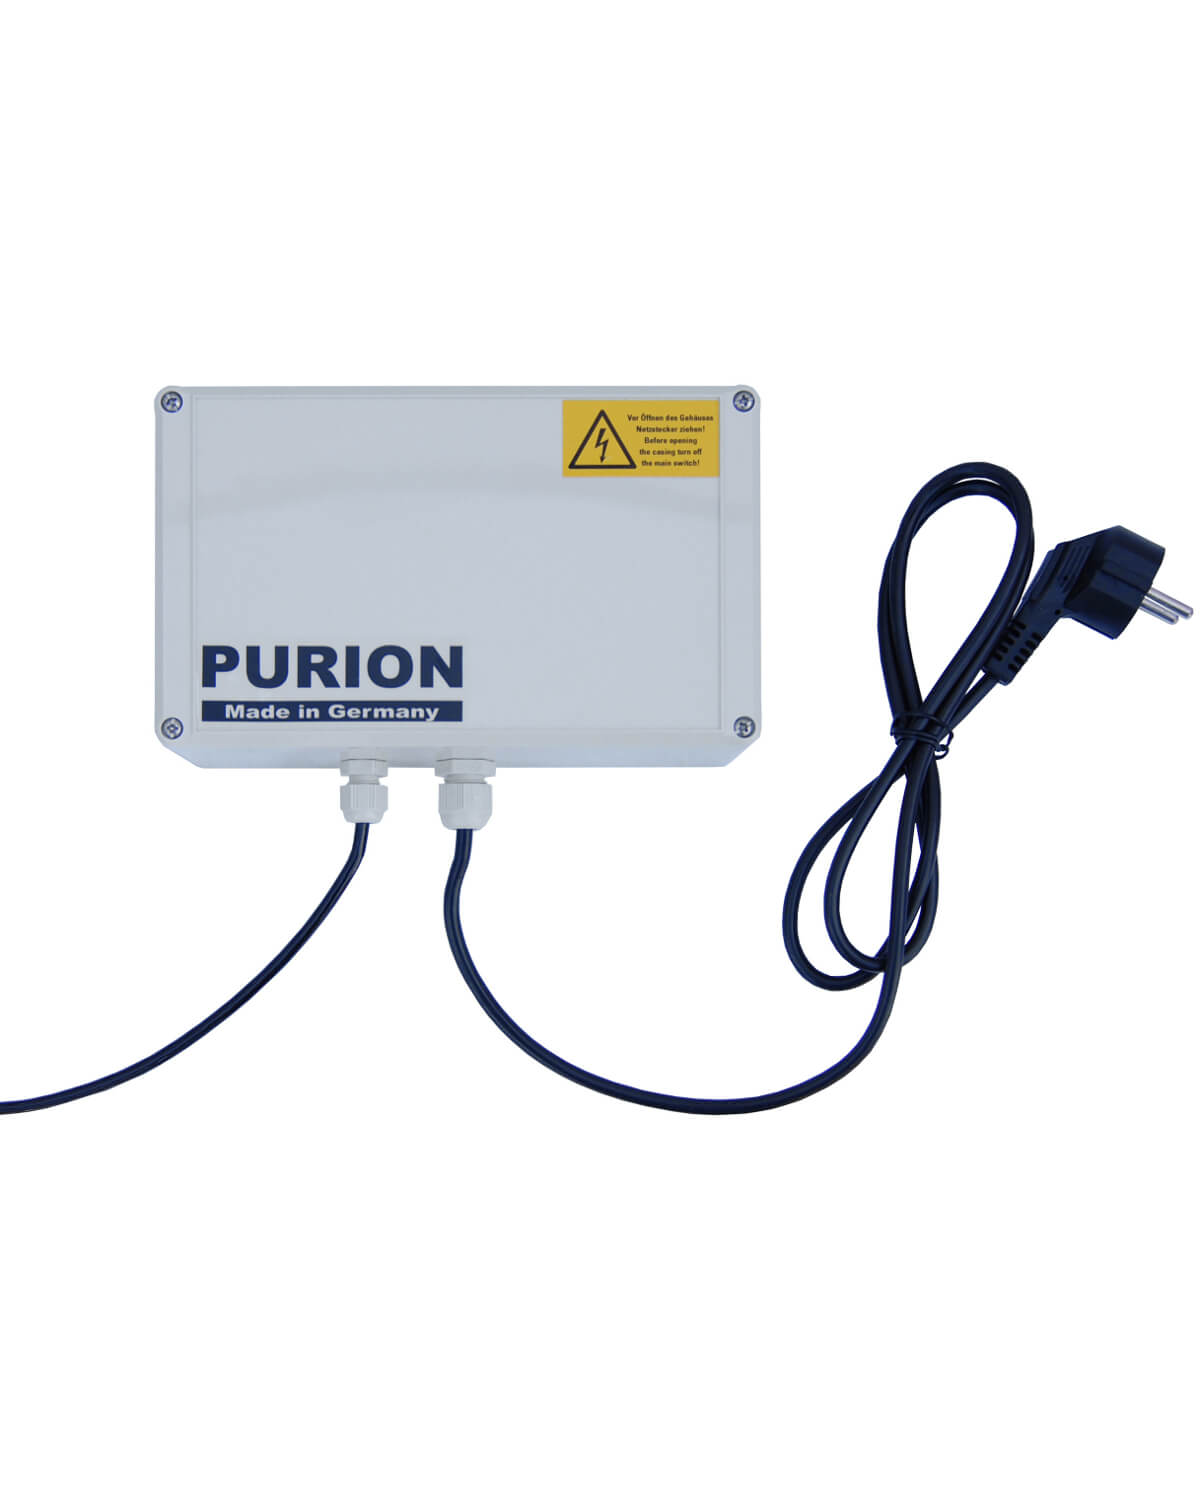 PURION 1000 PVC-U